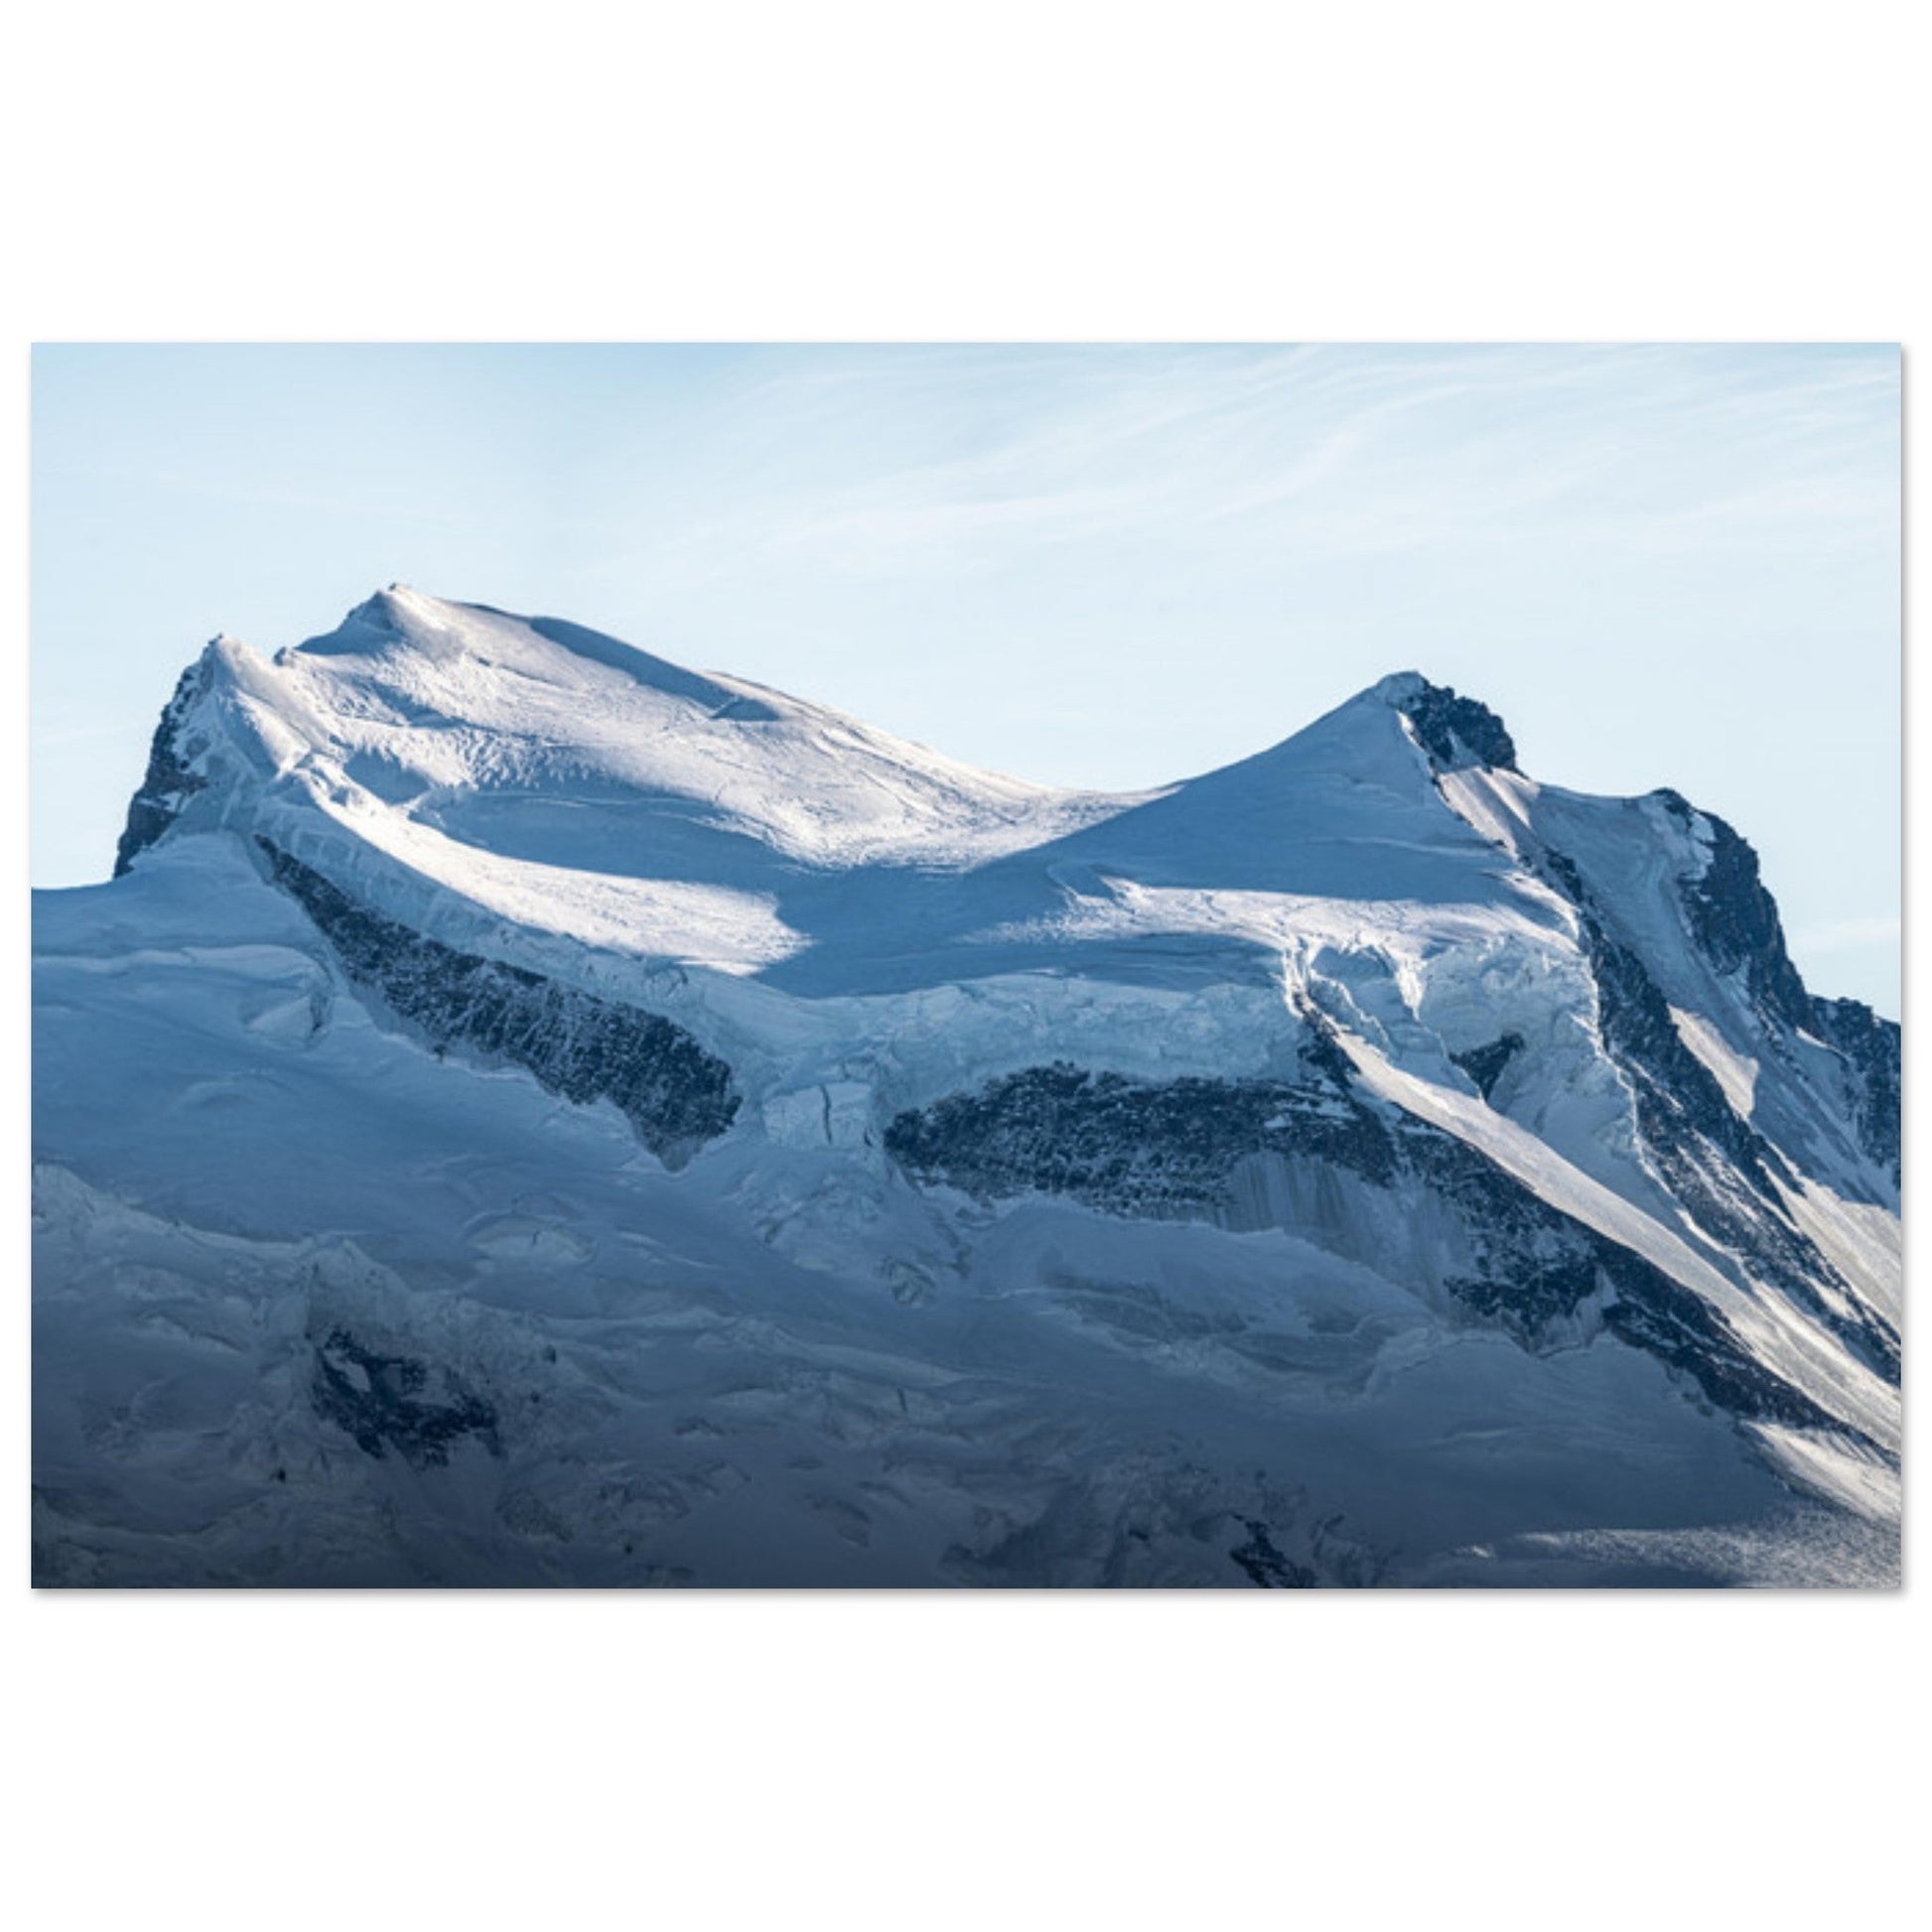 Vente Photo du Grand Combin et de son glacier, Suisse - Tableau photo alu montagne